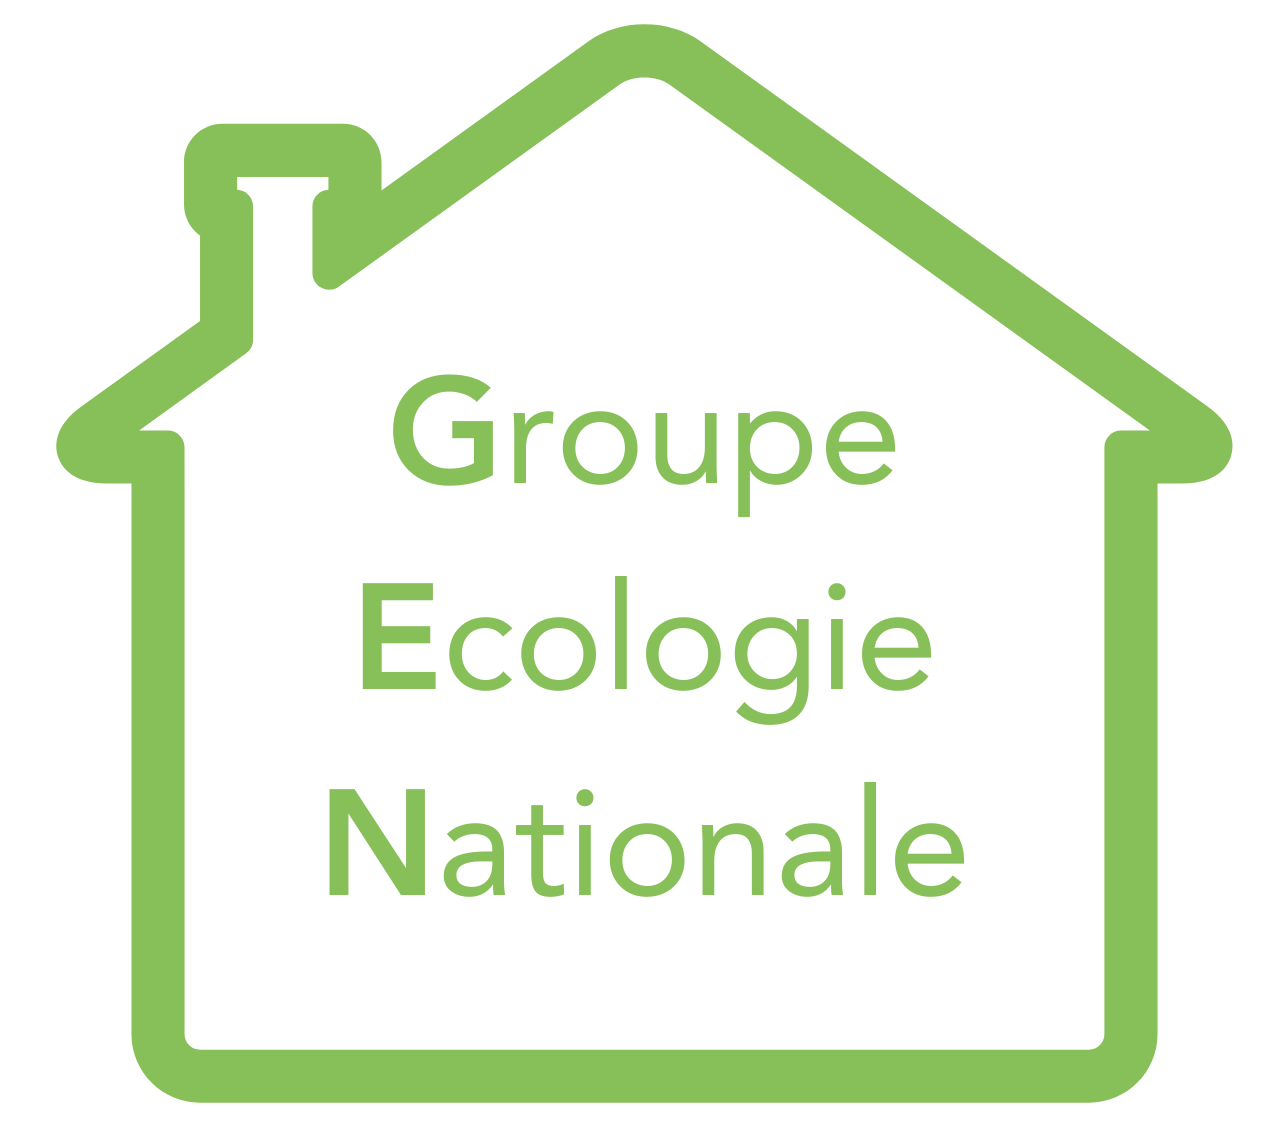 Groupe Ecologie Nationale logo